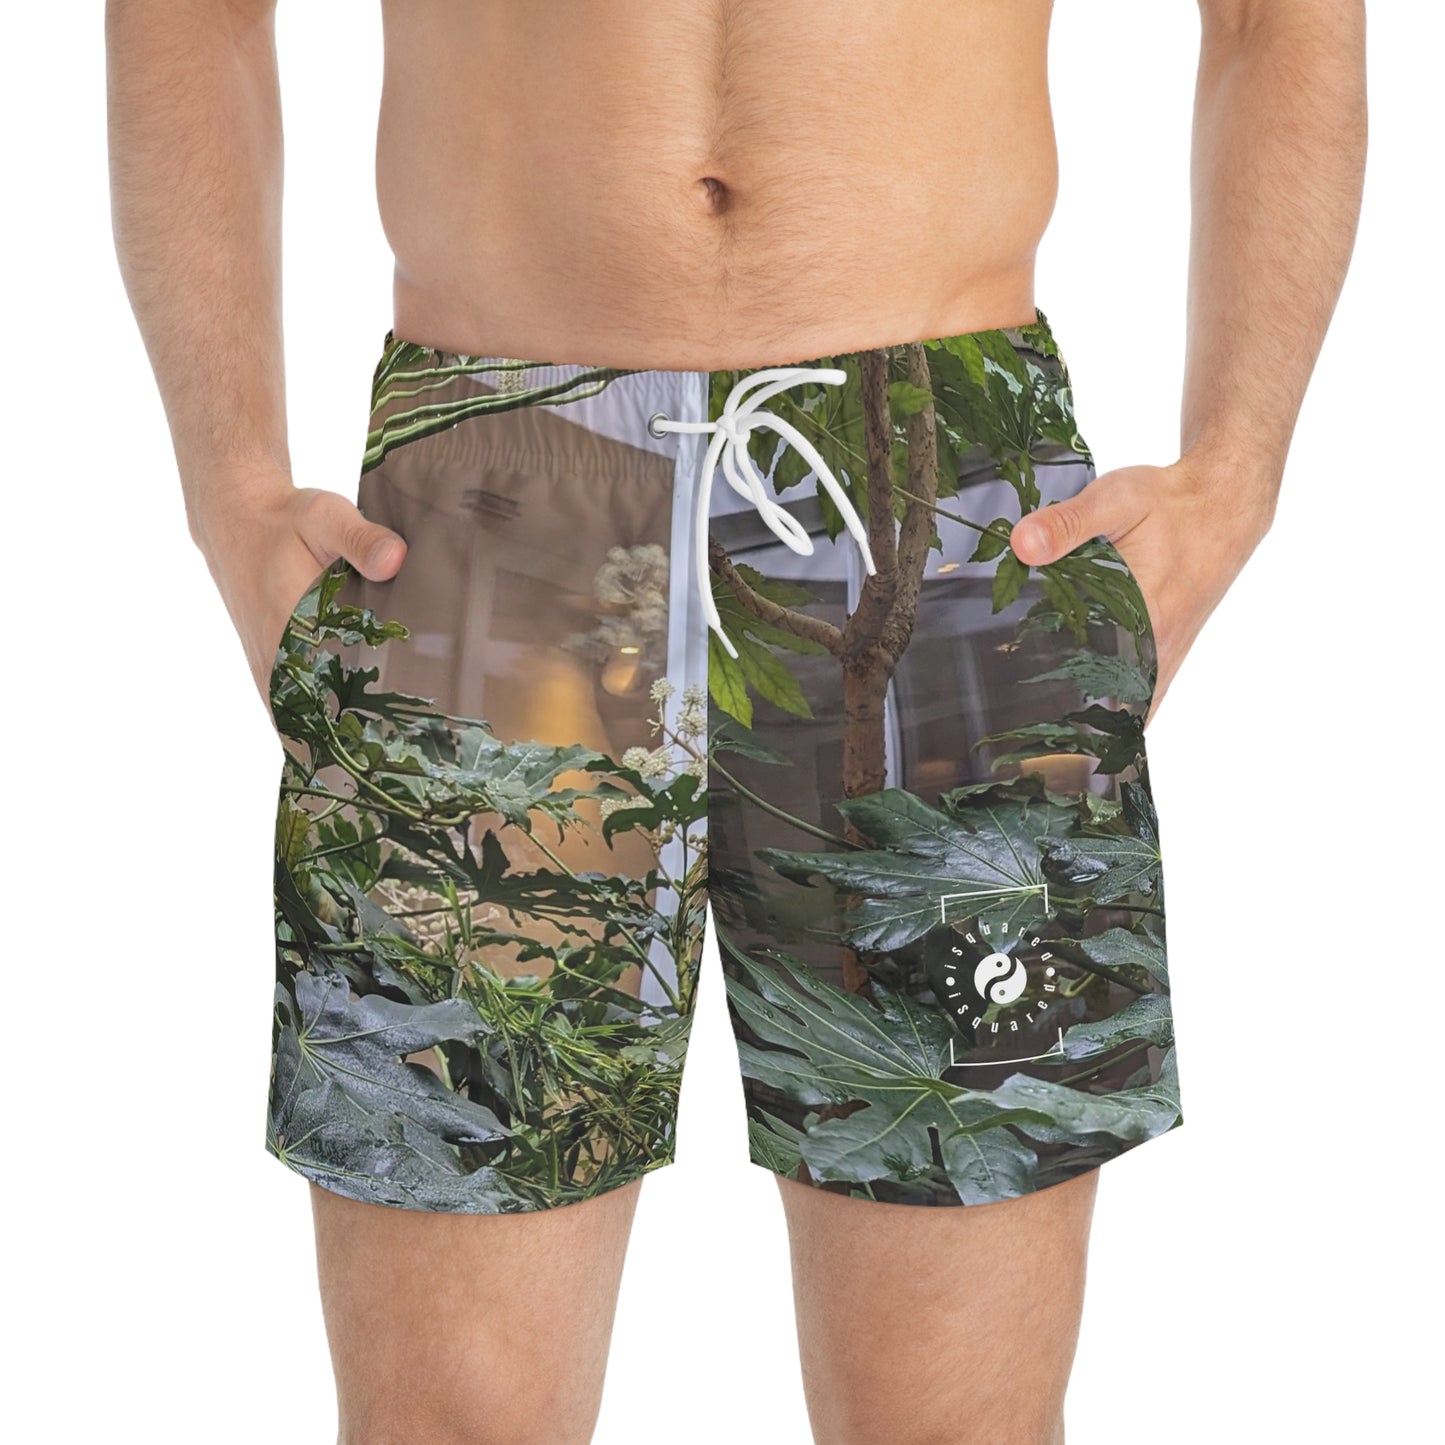 Plasky Jungle - Swim Trunks for Men